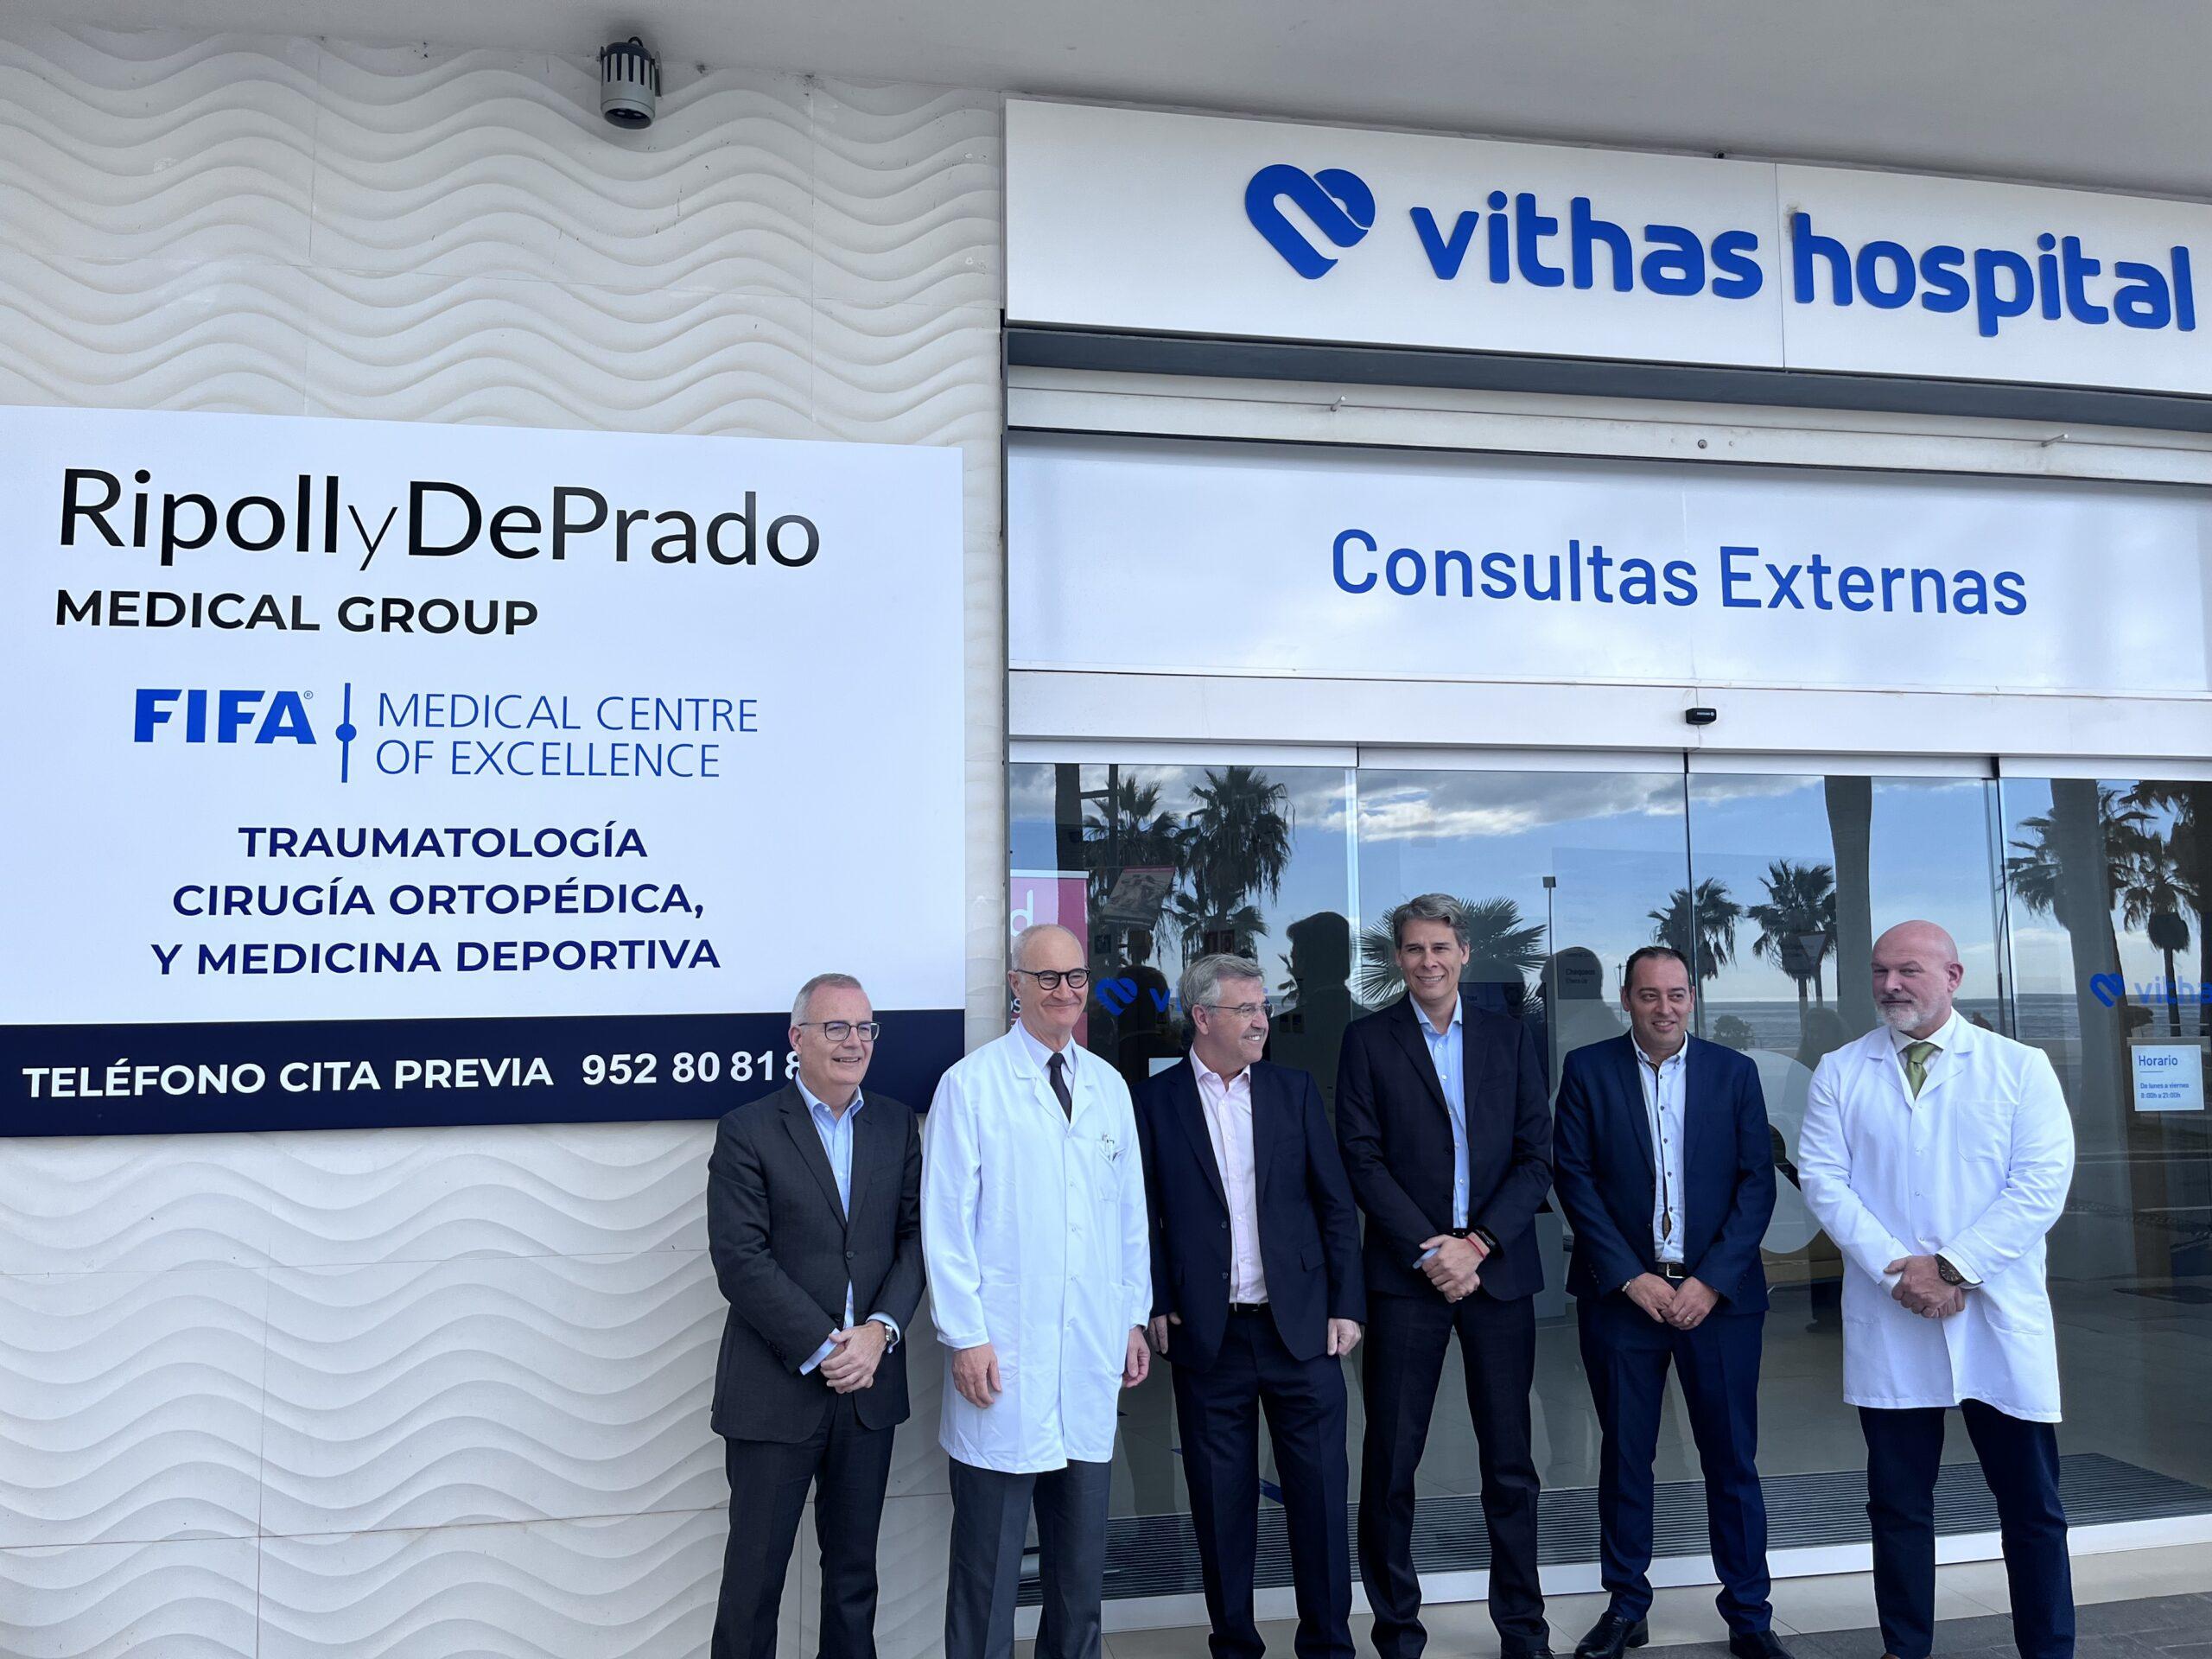 El alcalde de Estepona visita el Hospital Vithas Xanit Estepona para inaugurar oficialmente las instalaciones Ripoll y De Prado Medical Group